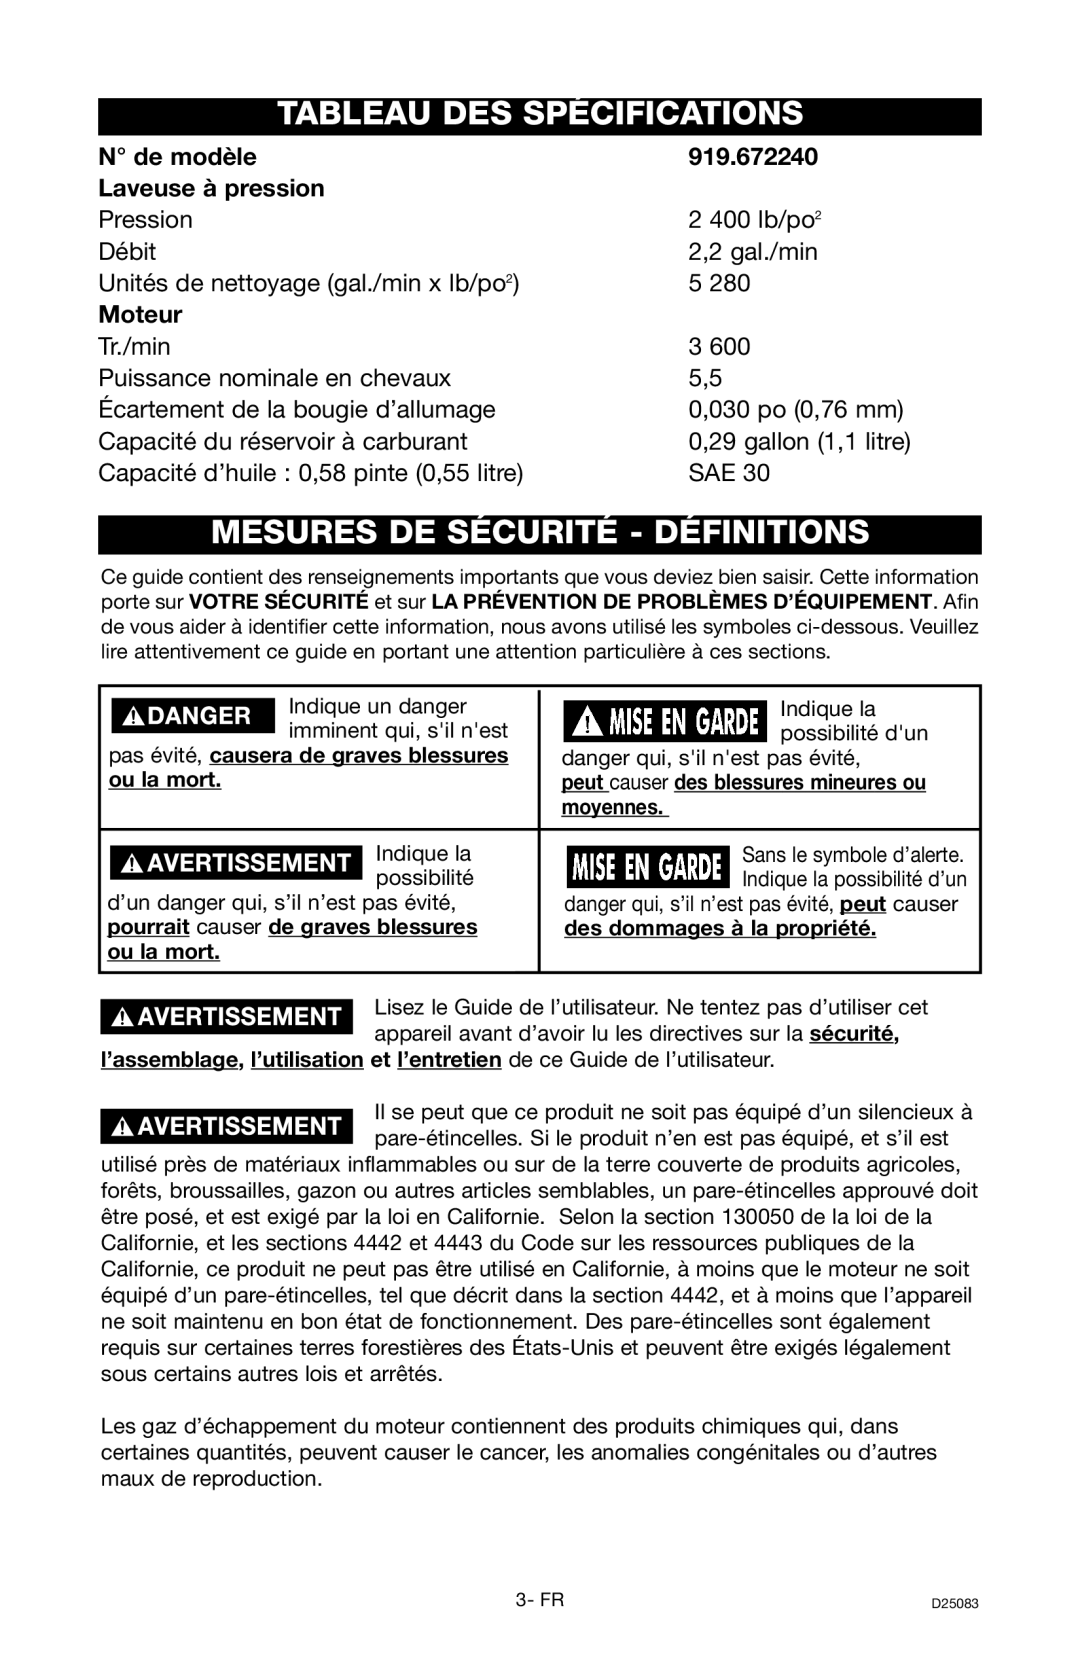 Craftsman D25083 Tableau Des Spécifications, Mesures De Sécurité - Définitions, N de modèle, 919.672240, Moteur 